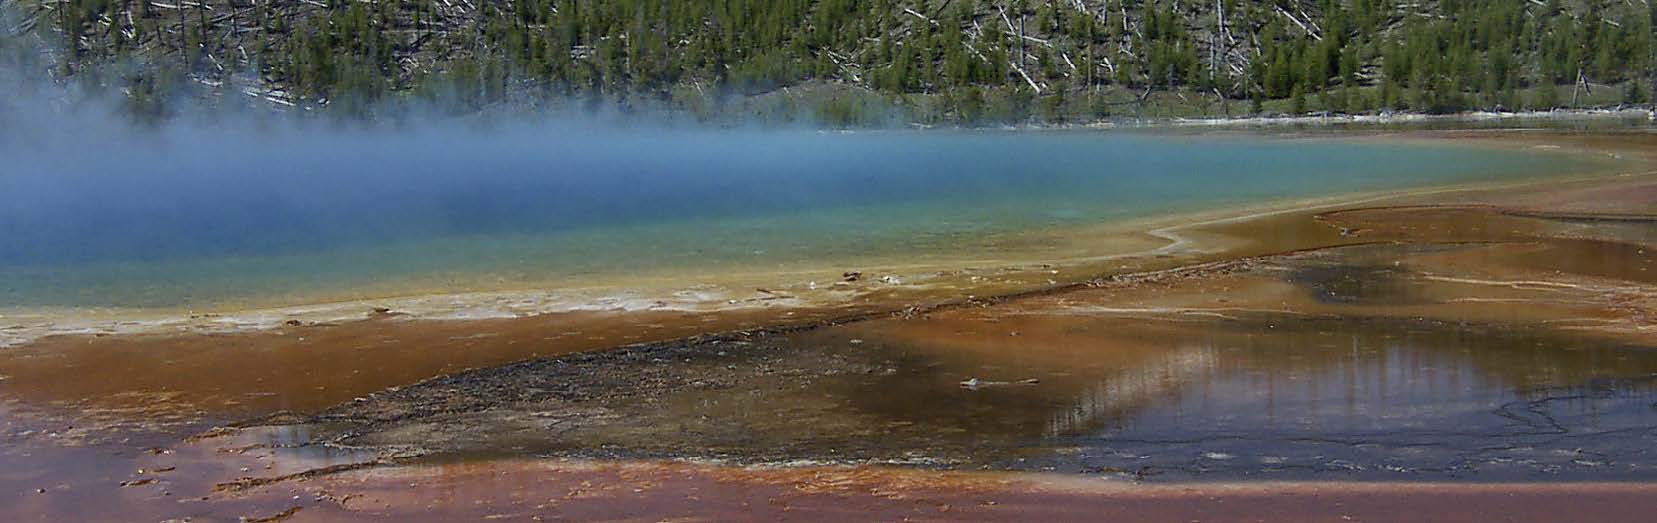 Grand Prismatic Spring i Yellowstone National Park, USA, är världens tredje största heta källa. De färgade områdena är grupper av mikroorganismer som lever i olika temperaturzoner.